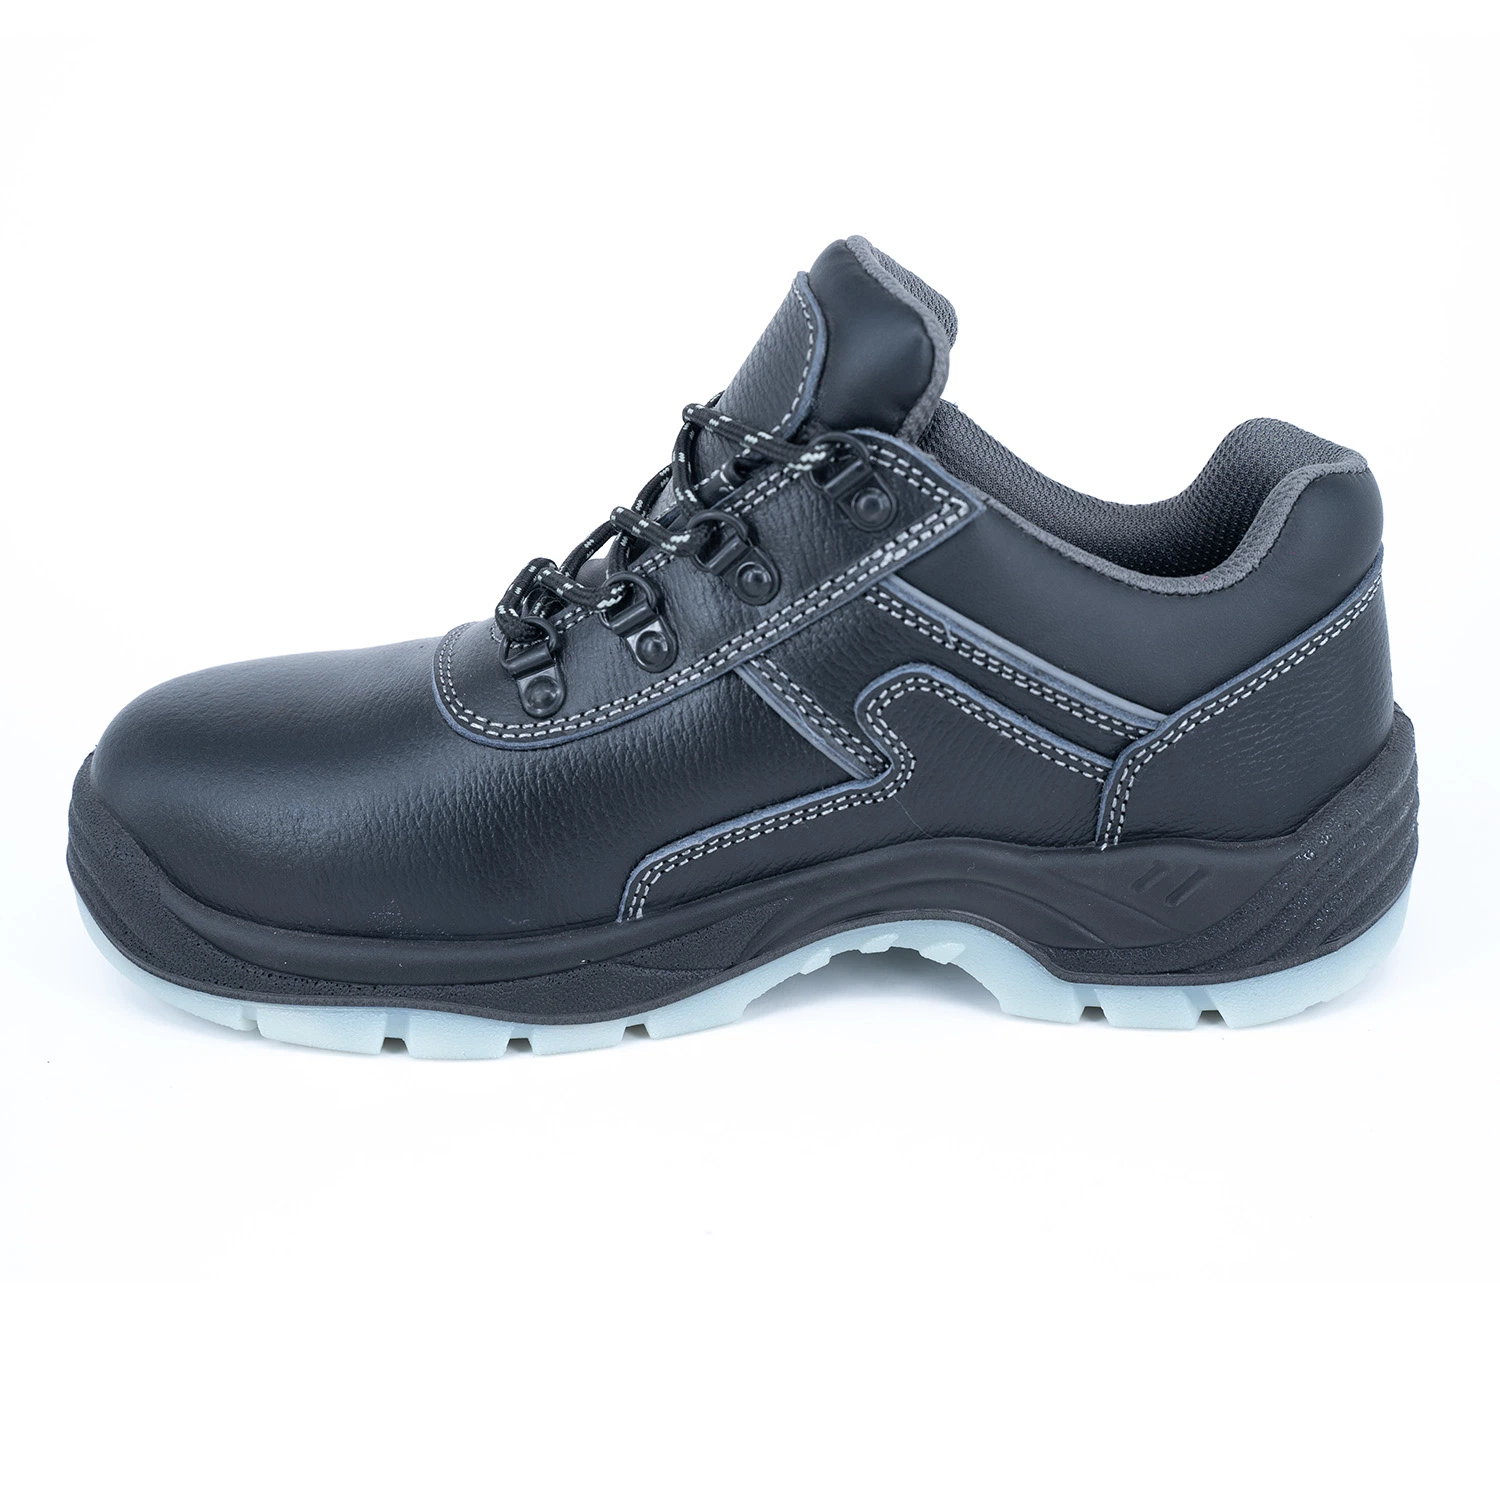 Puntera de suela de cuero Geniune PU Hi-Poly Suela de calzado de seguridad antiestática calzado botas Sneakers con certificado CE